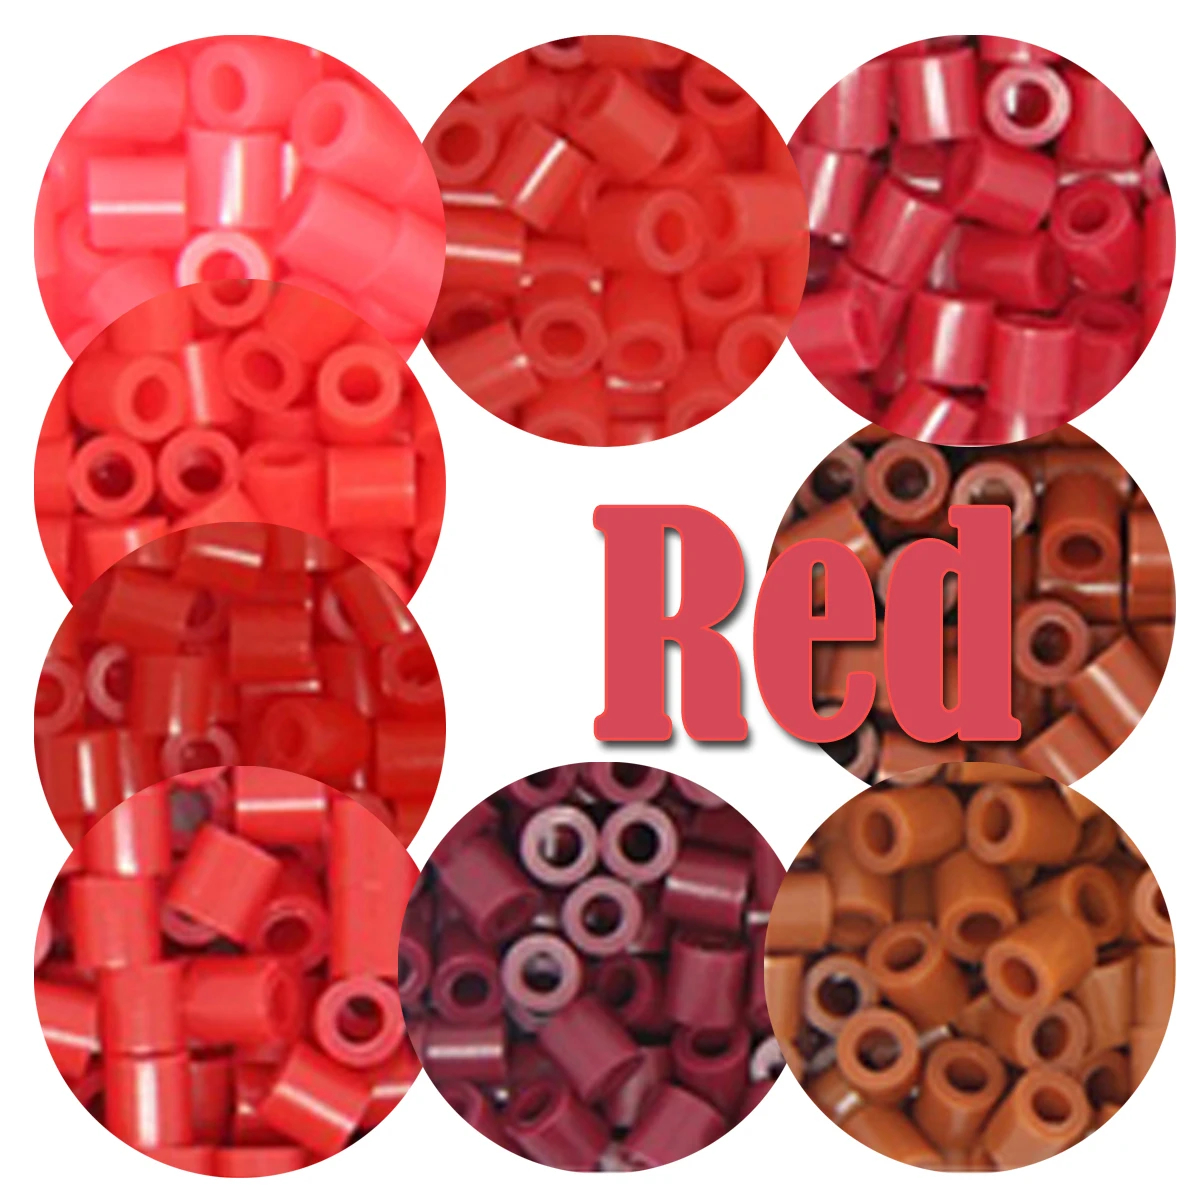 สีแดง5Mm 1000PCS Pixel Art Puzzle Hama ลูกปัดสำหรับเด็กเหล็กฟิวส์ลูกปัด Diy ปริศนาคุณภาพสูงของขวัญของเล่นเด็ก